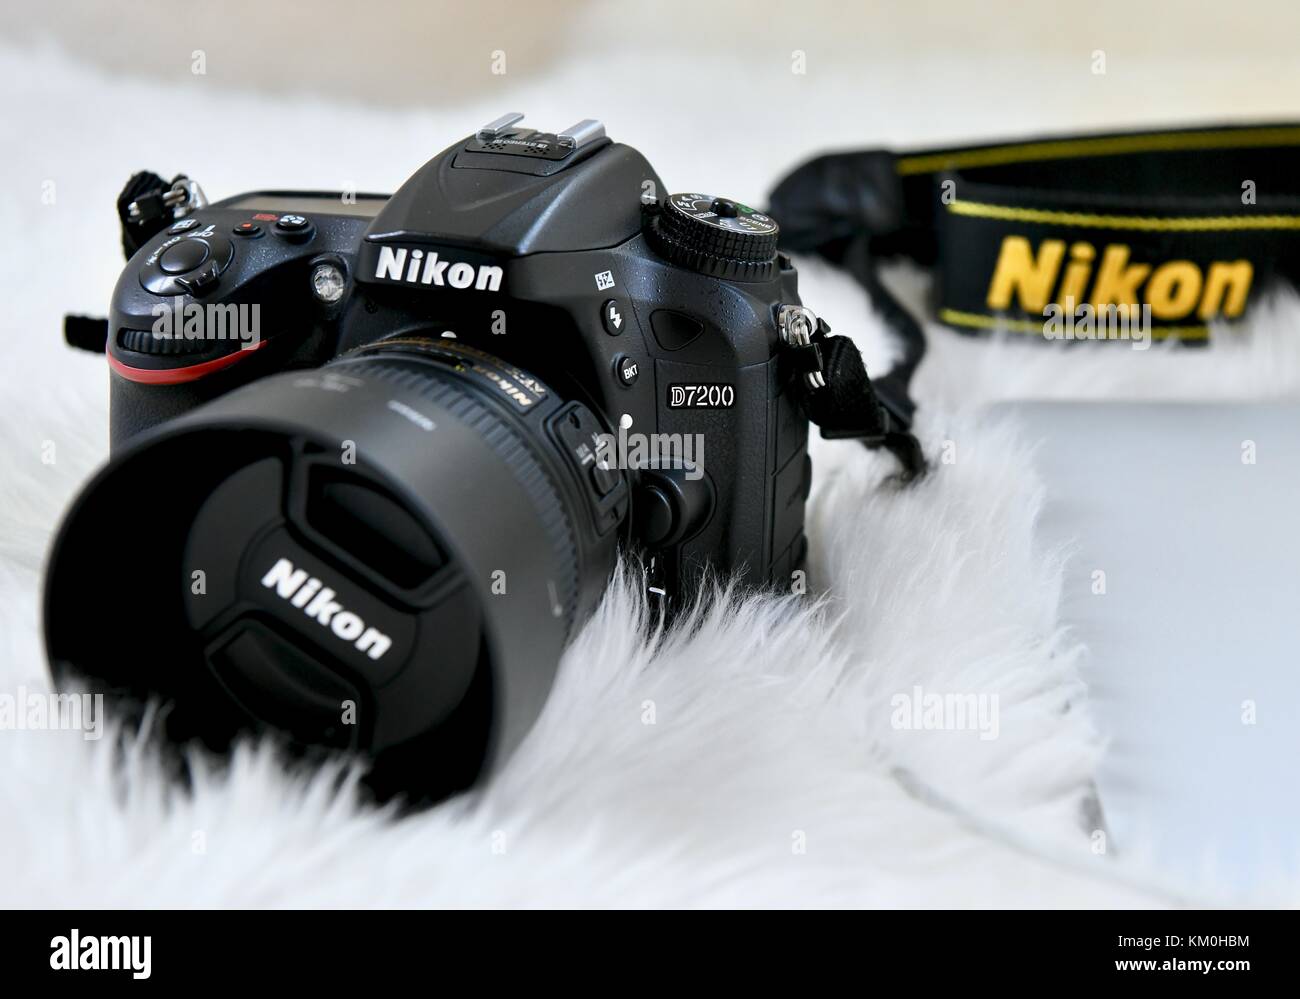 Appareil photo reflex numérique Nikon D7200 avec objectif Nikkor 50 mm  Photo Stock - Alamy